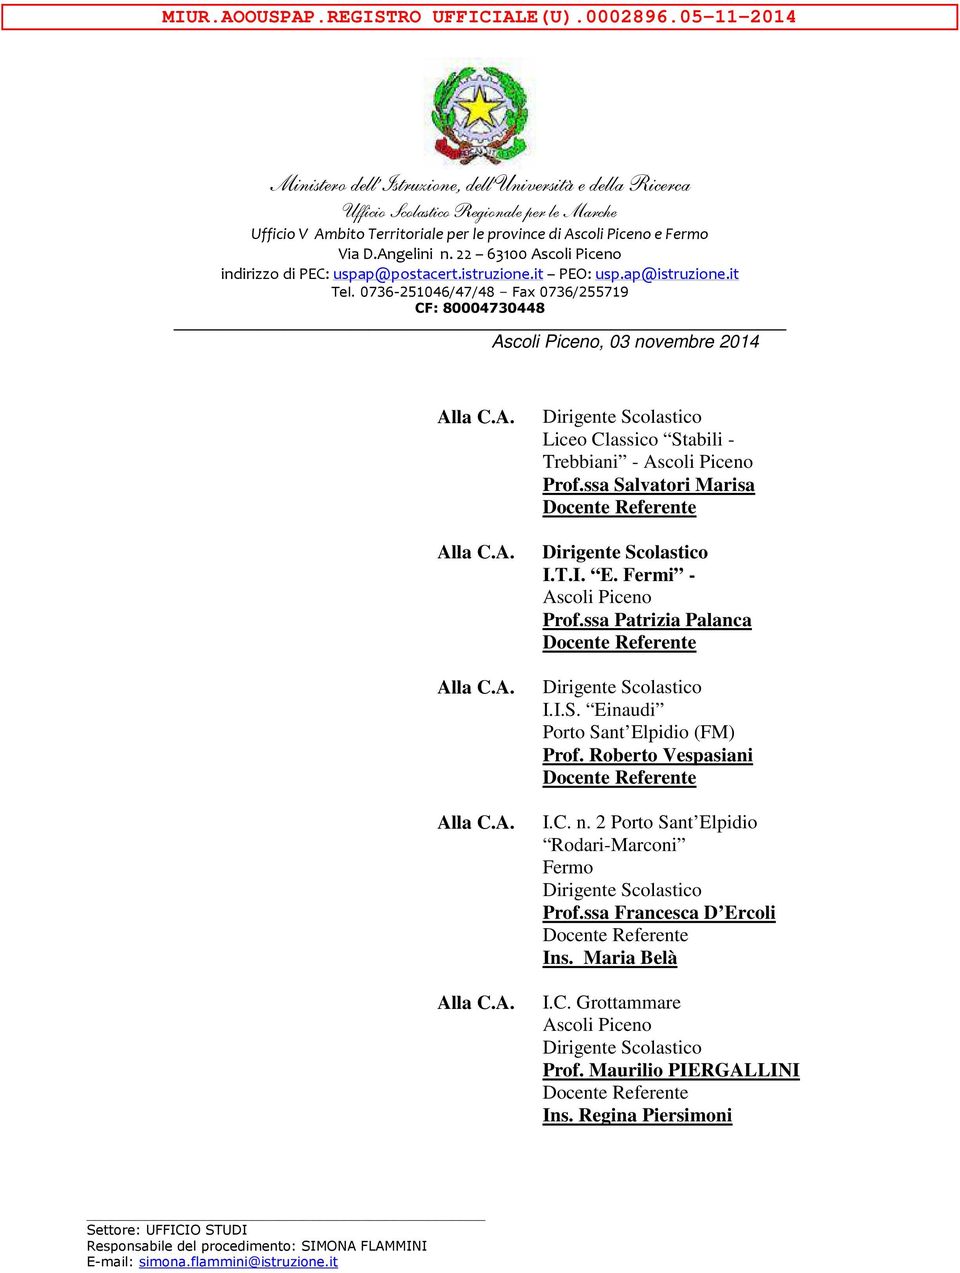 Angelini n. 22 63100, 03 novembre 2014 Liceo Classico Stabili - Trebbiani - Prof.ssa Salvatori Marisa I.T.I. E. Fermi - Prof.